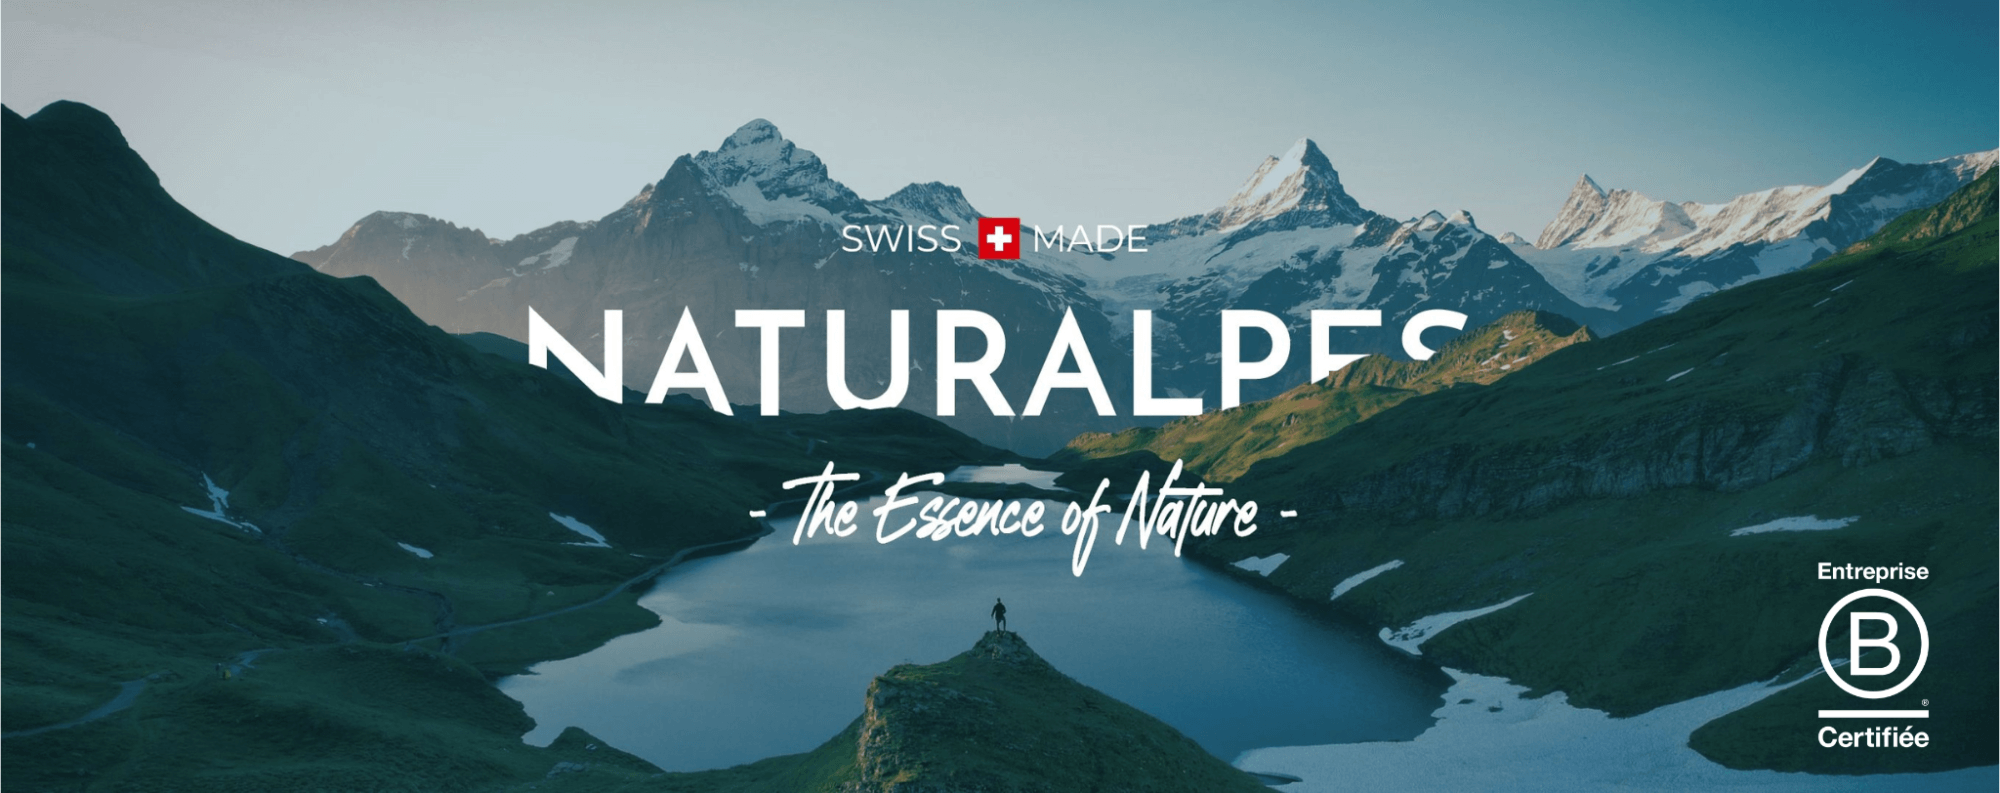 Bienvenue sur Naturalpes Suisse